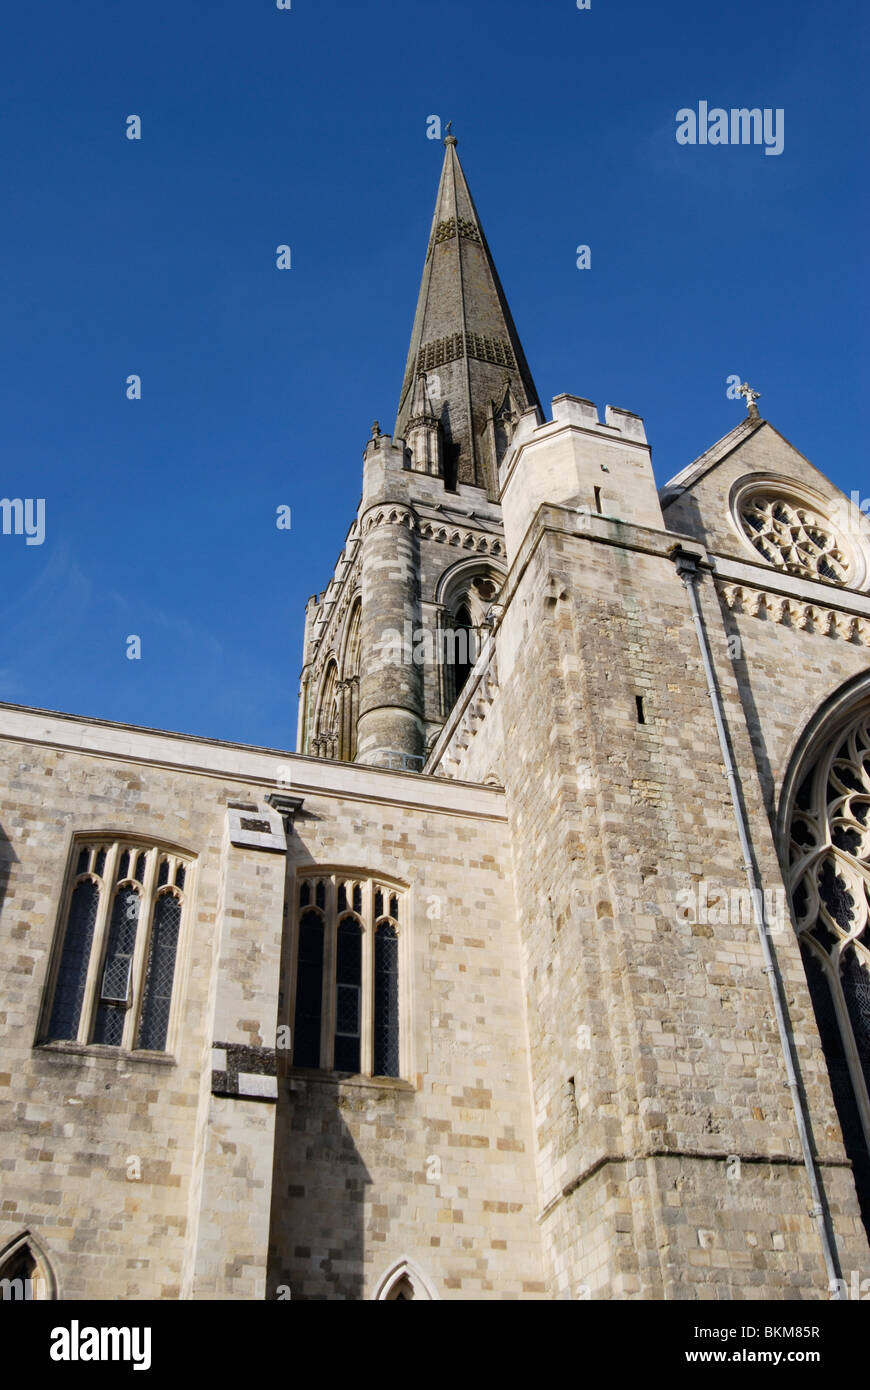 Tour et flèche de la cathédrale de Chichester. West Sussex. L'Angleterre Banque D'Images